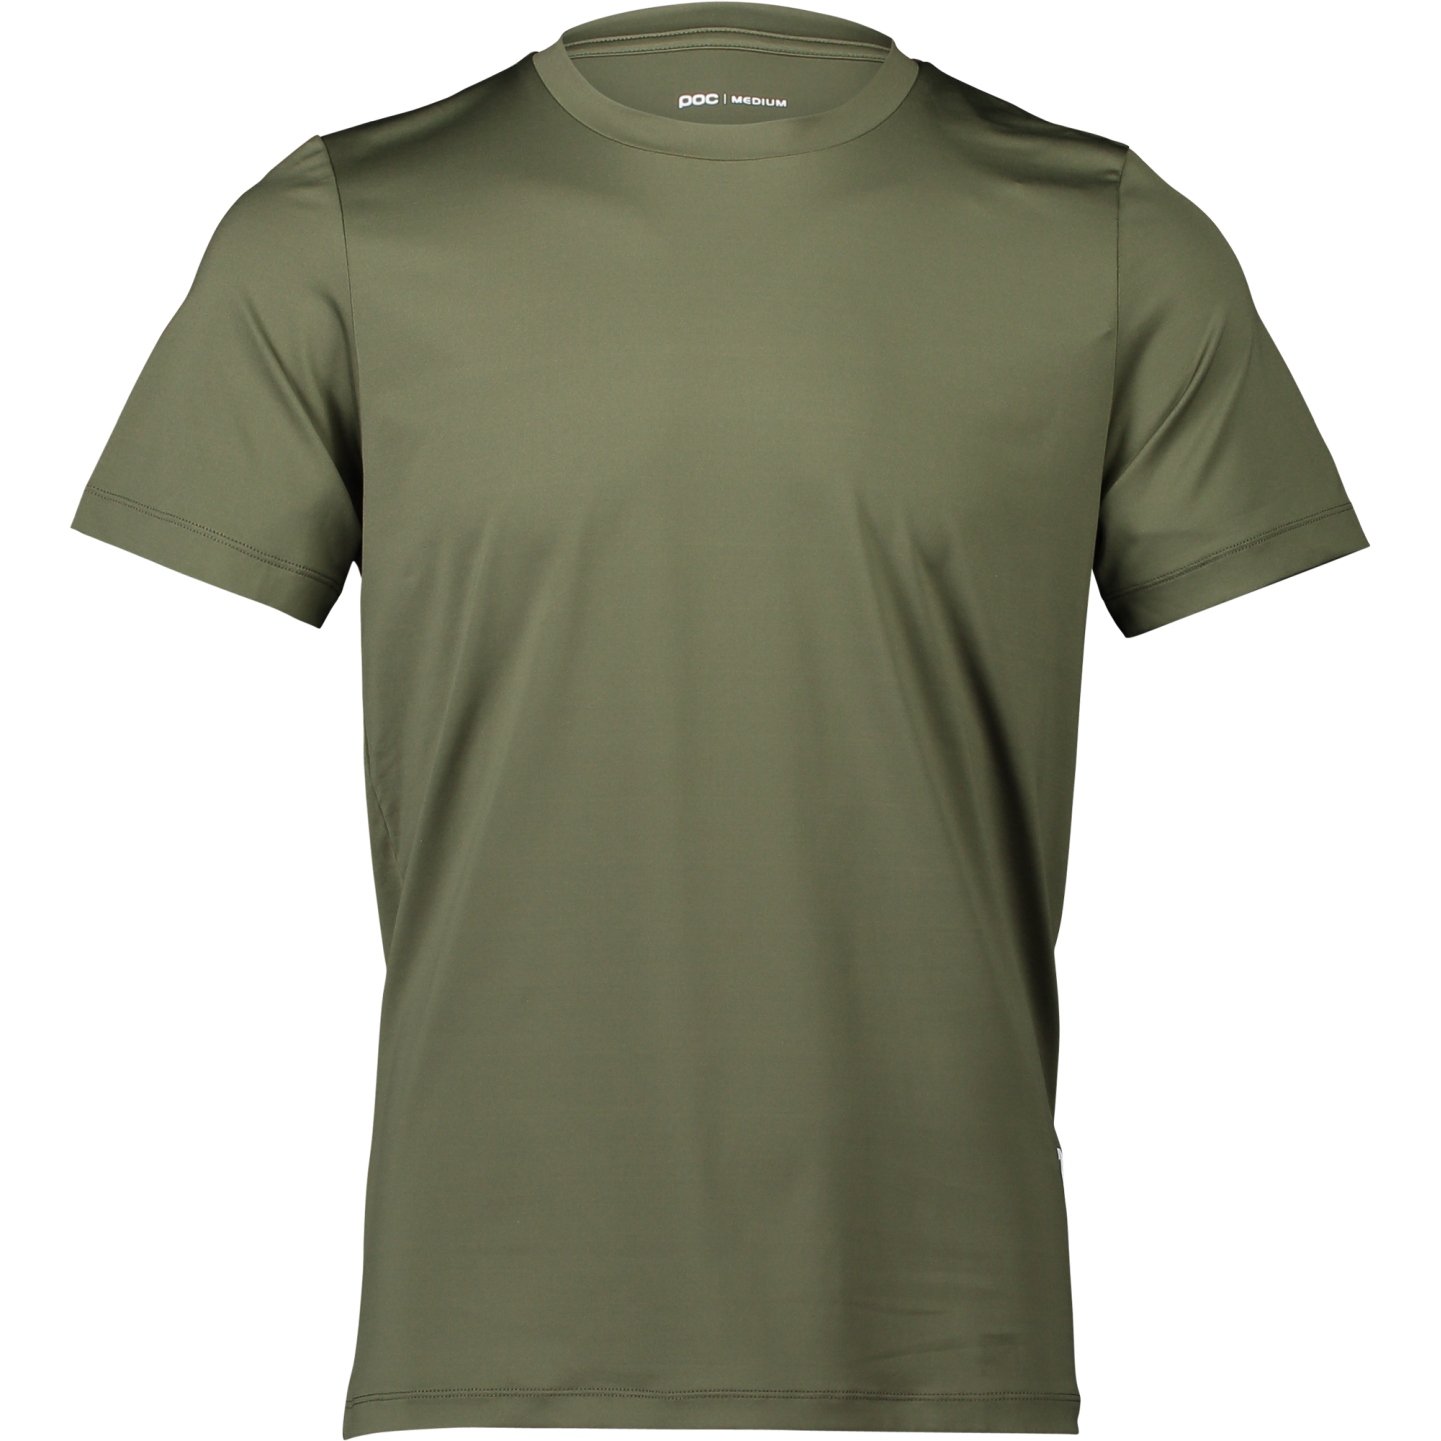 Produktbild von POC Reform Enduro Light T-Shirt Herren - 1460 Epidote Green